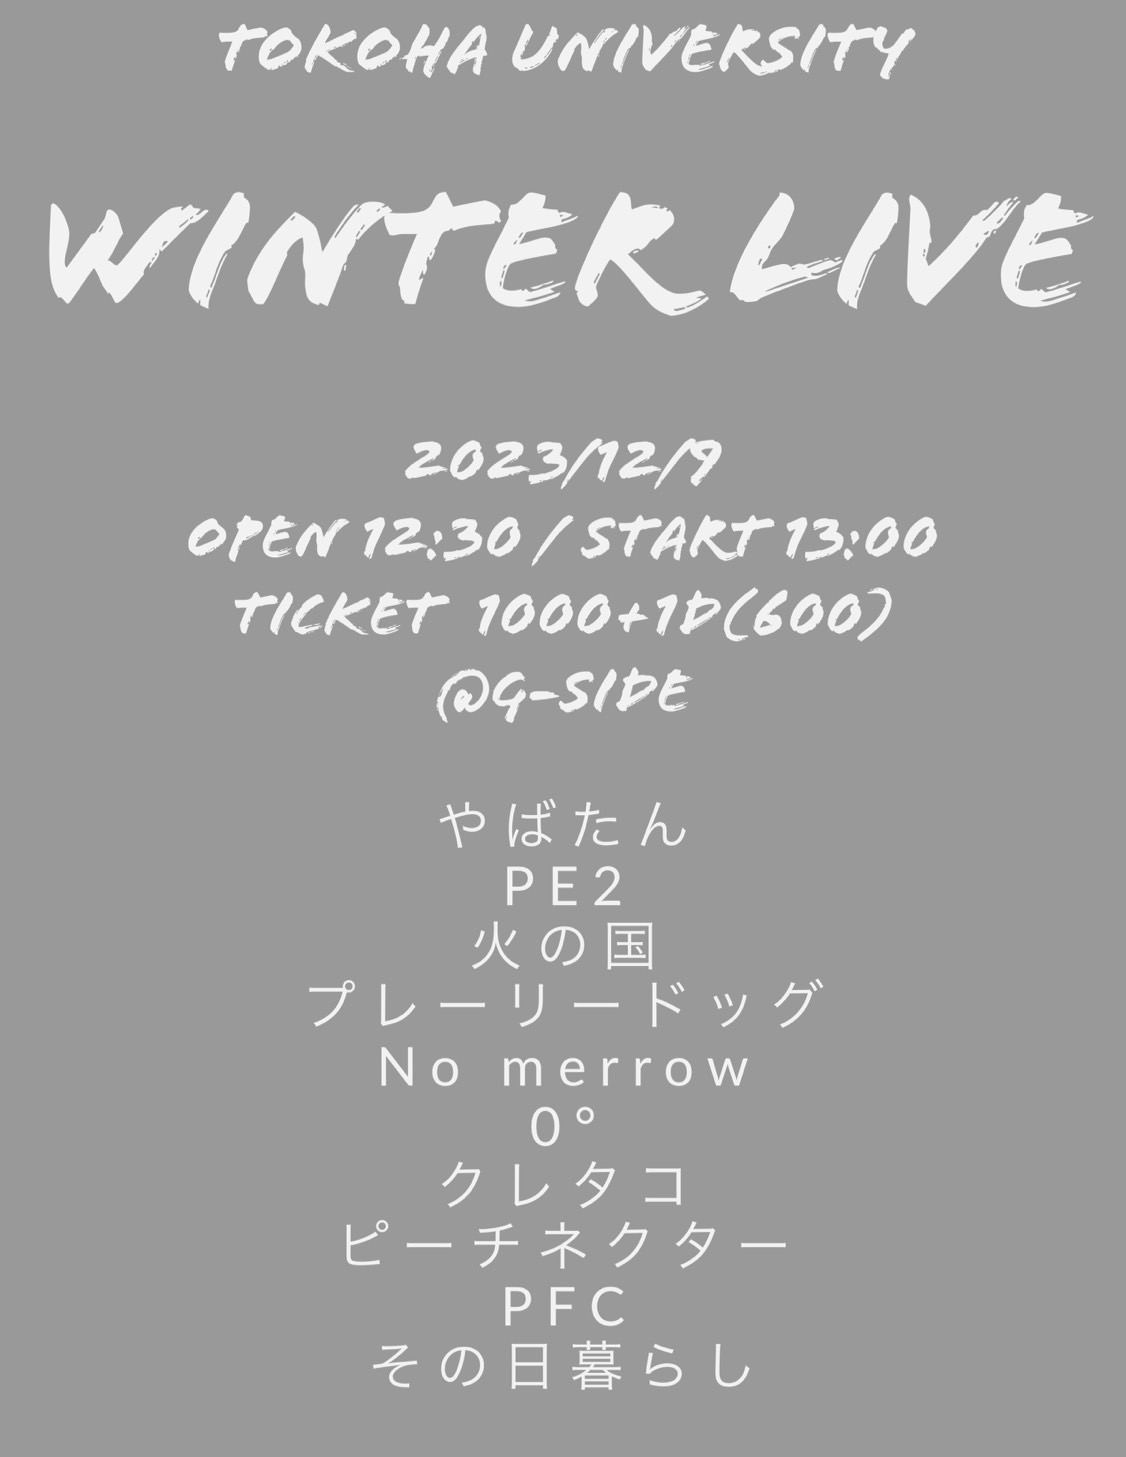 12月9日土曜日 TOKOHA UNIVERSITY WINTER LIVE